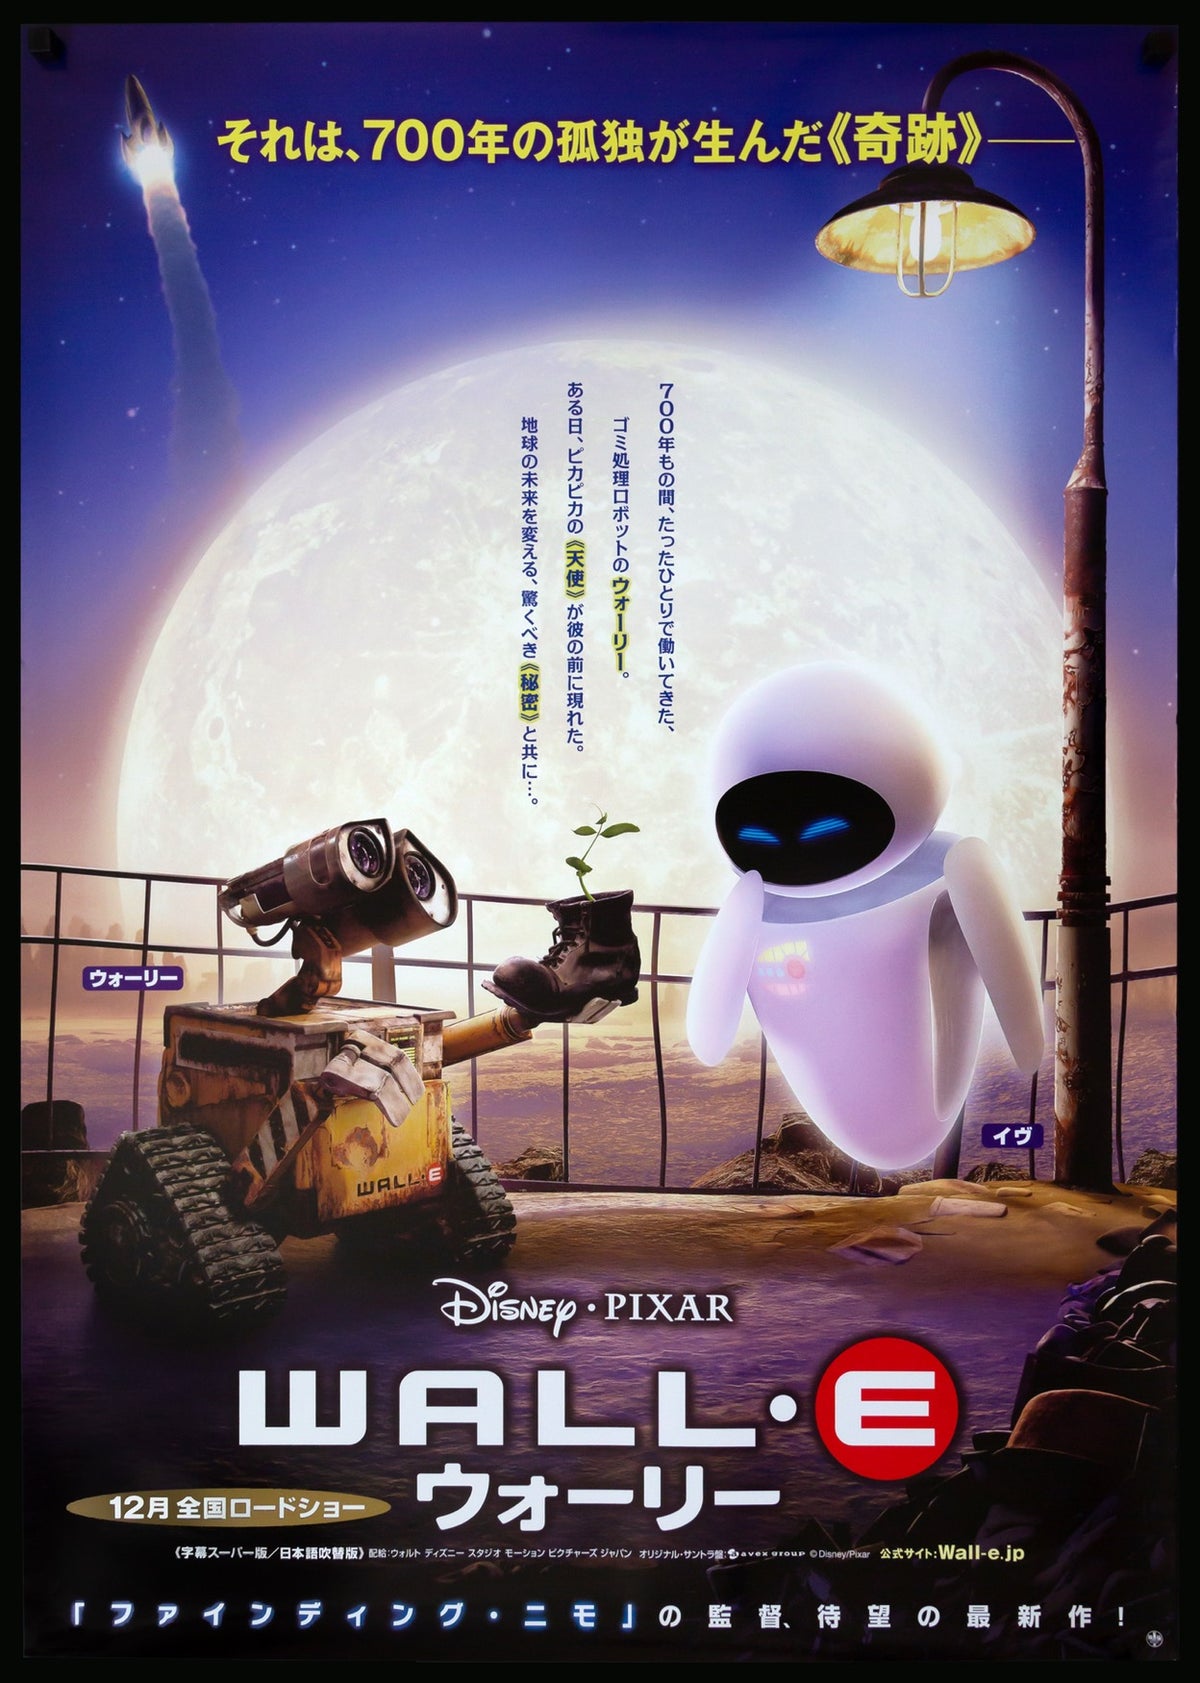 WALL-E (2008) original movie poster for sale at Original Film Art